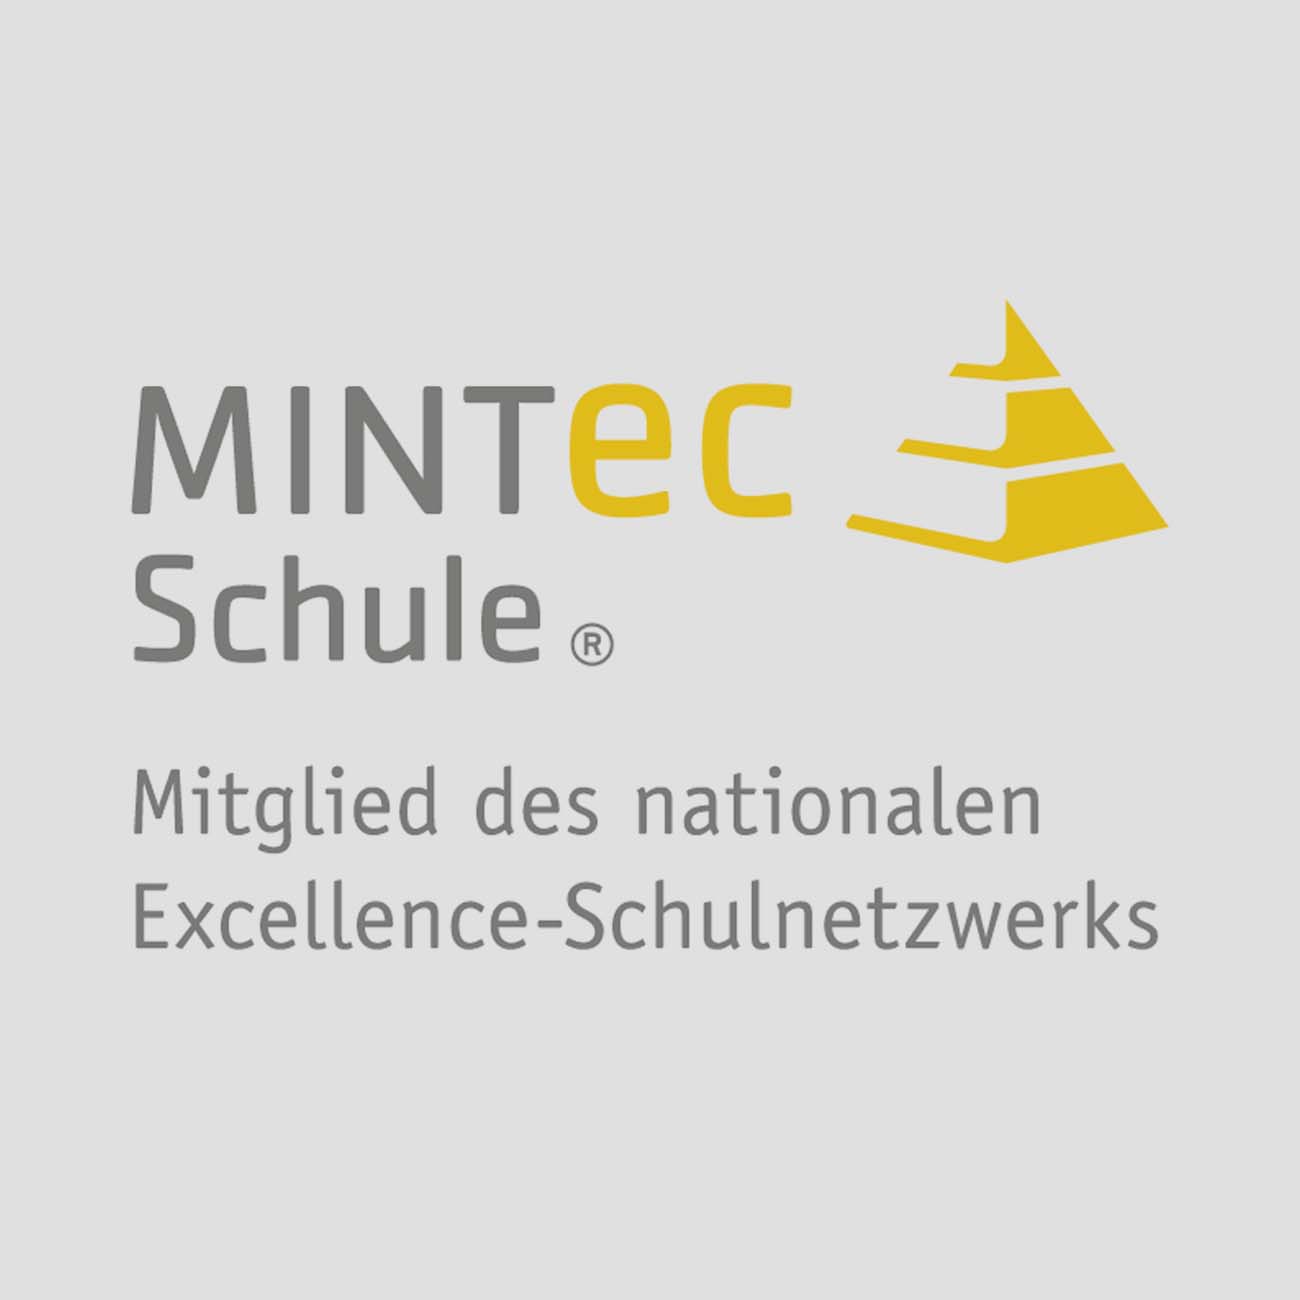 MINT-EC-SCHULE_Logo_Mitglied_kachel3